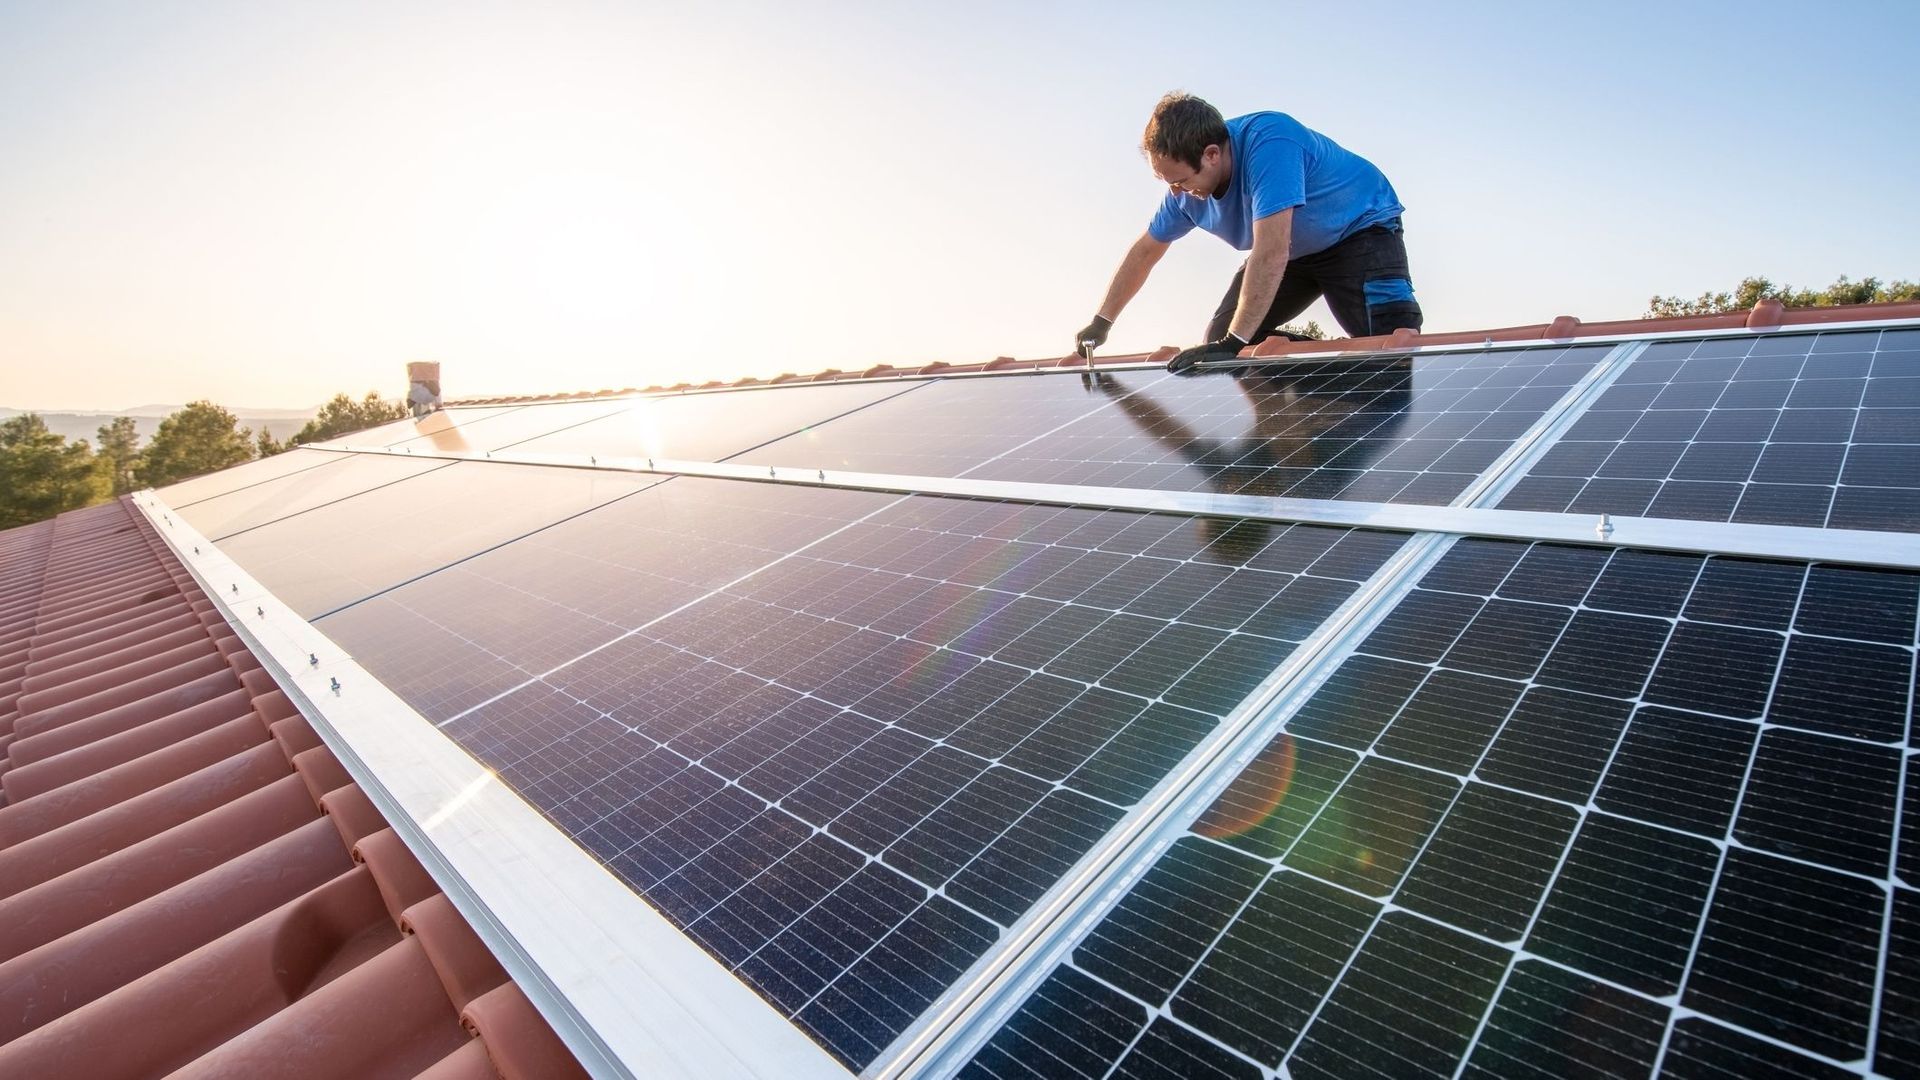 Et si vous stockiez l'énergie solaire de votre logement dans une armoire intelligente ?